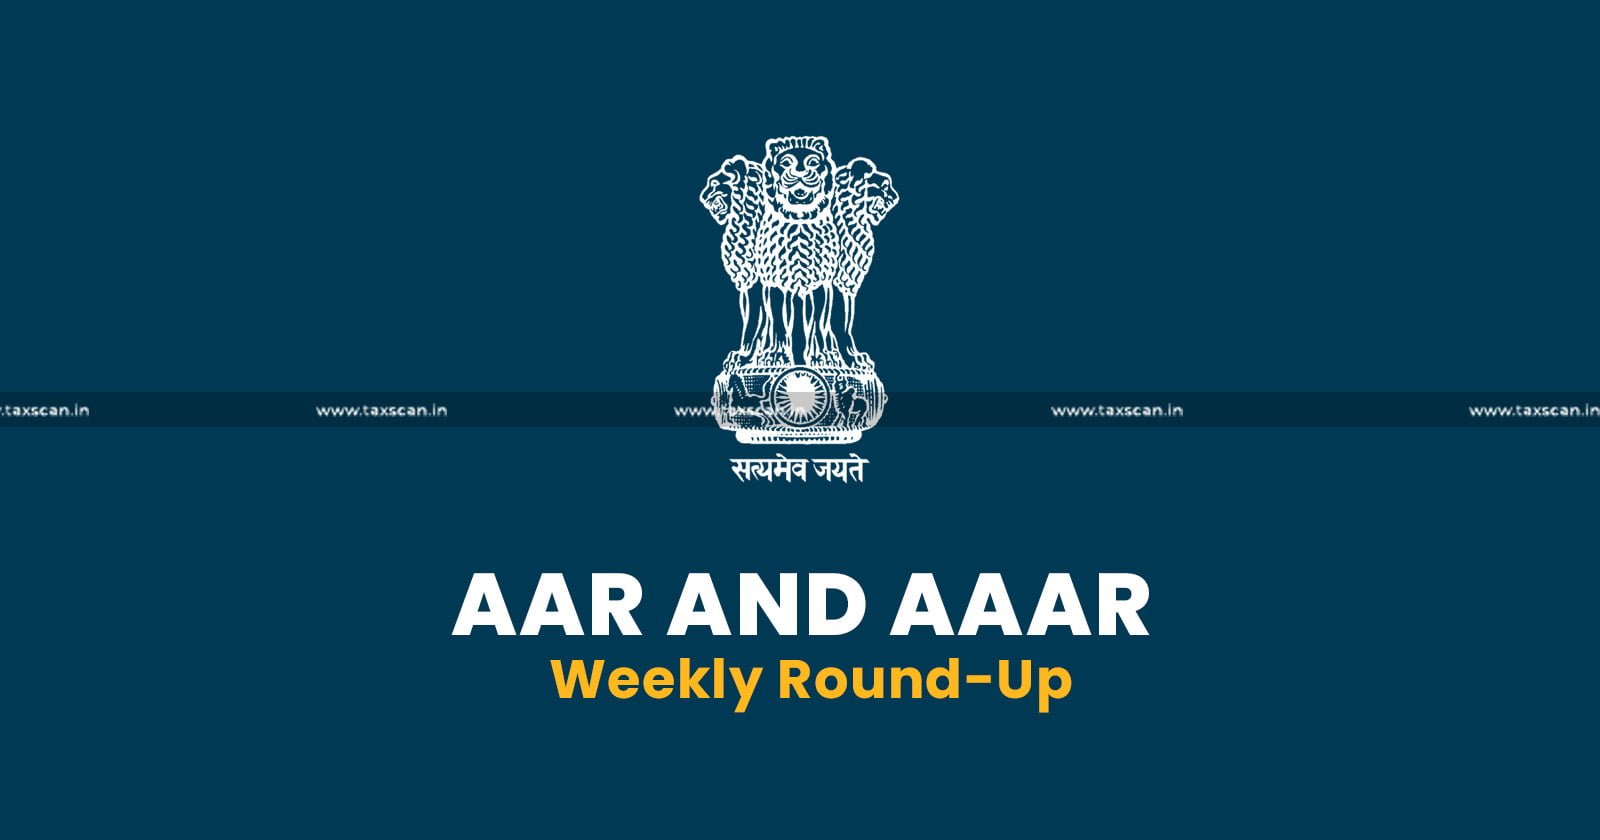 Weekly Round up - GST - AAR - AAAR - AAAR Weekly Round Up - AAR Weekly Round Up - taxscan